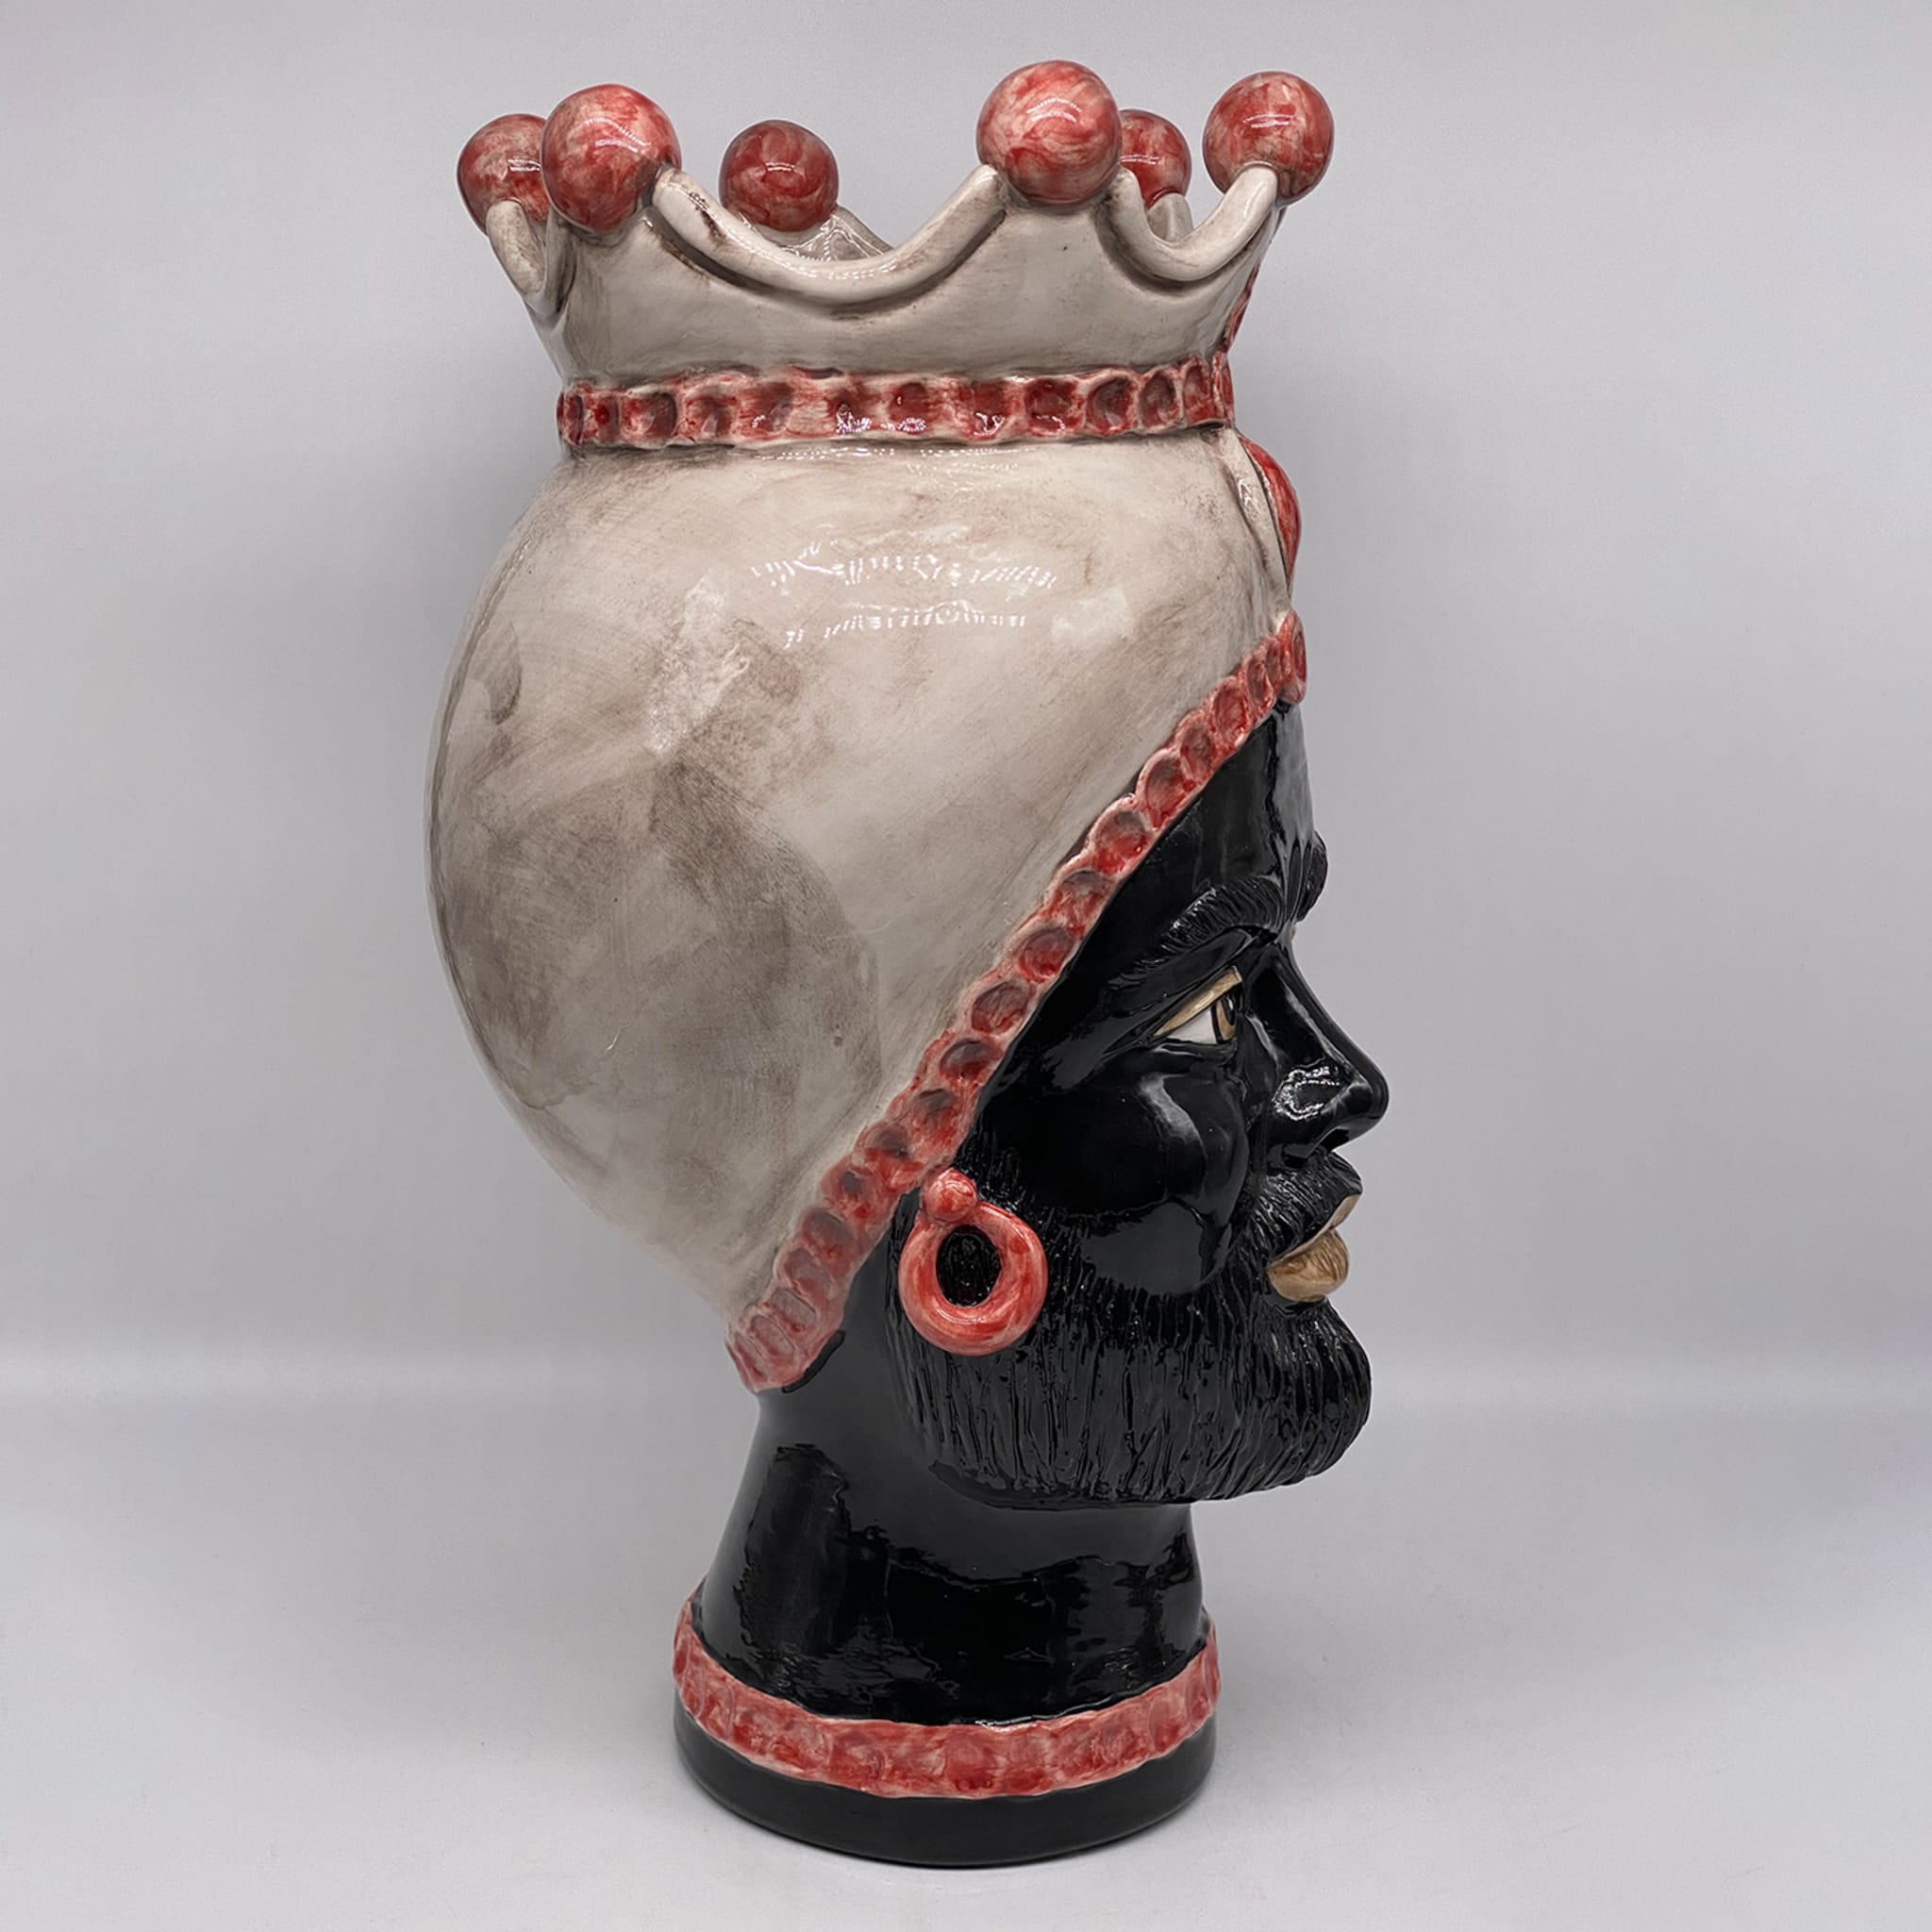 Luis Giant Man Red Spheres Moor's Head Vase - Alternative view 3